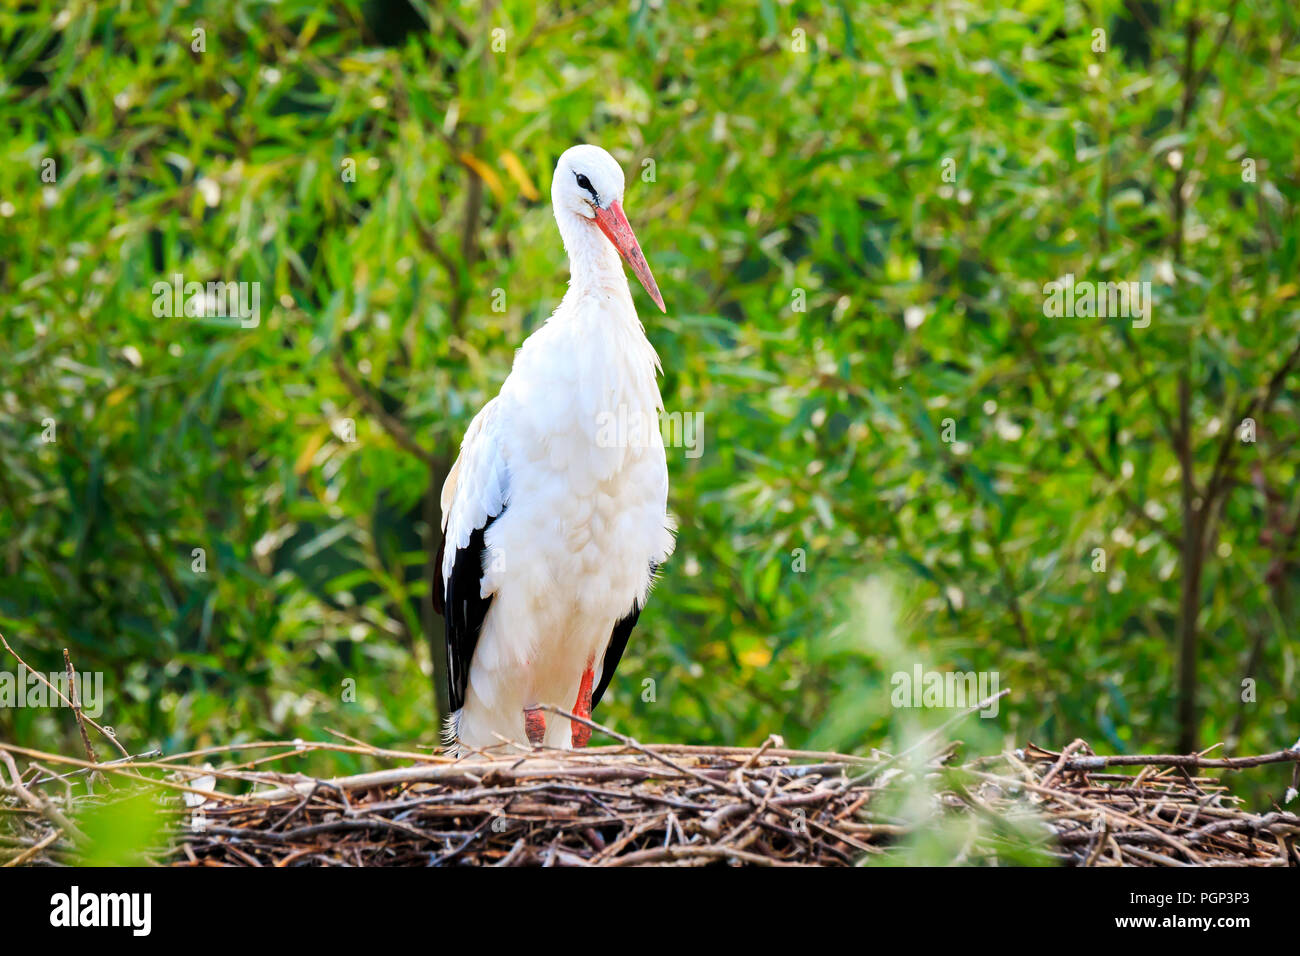 Libre d'une cigogne Ciconia ciconia d'oiseaux qui se reproduisent dans l'nid dans une forêt avec de jolies couleurs vives et sunlight, selective focus est utilisé. Banque D'Images